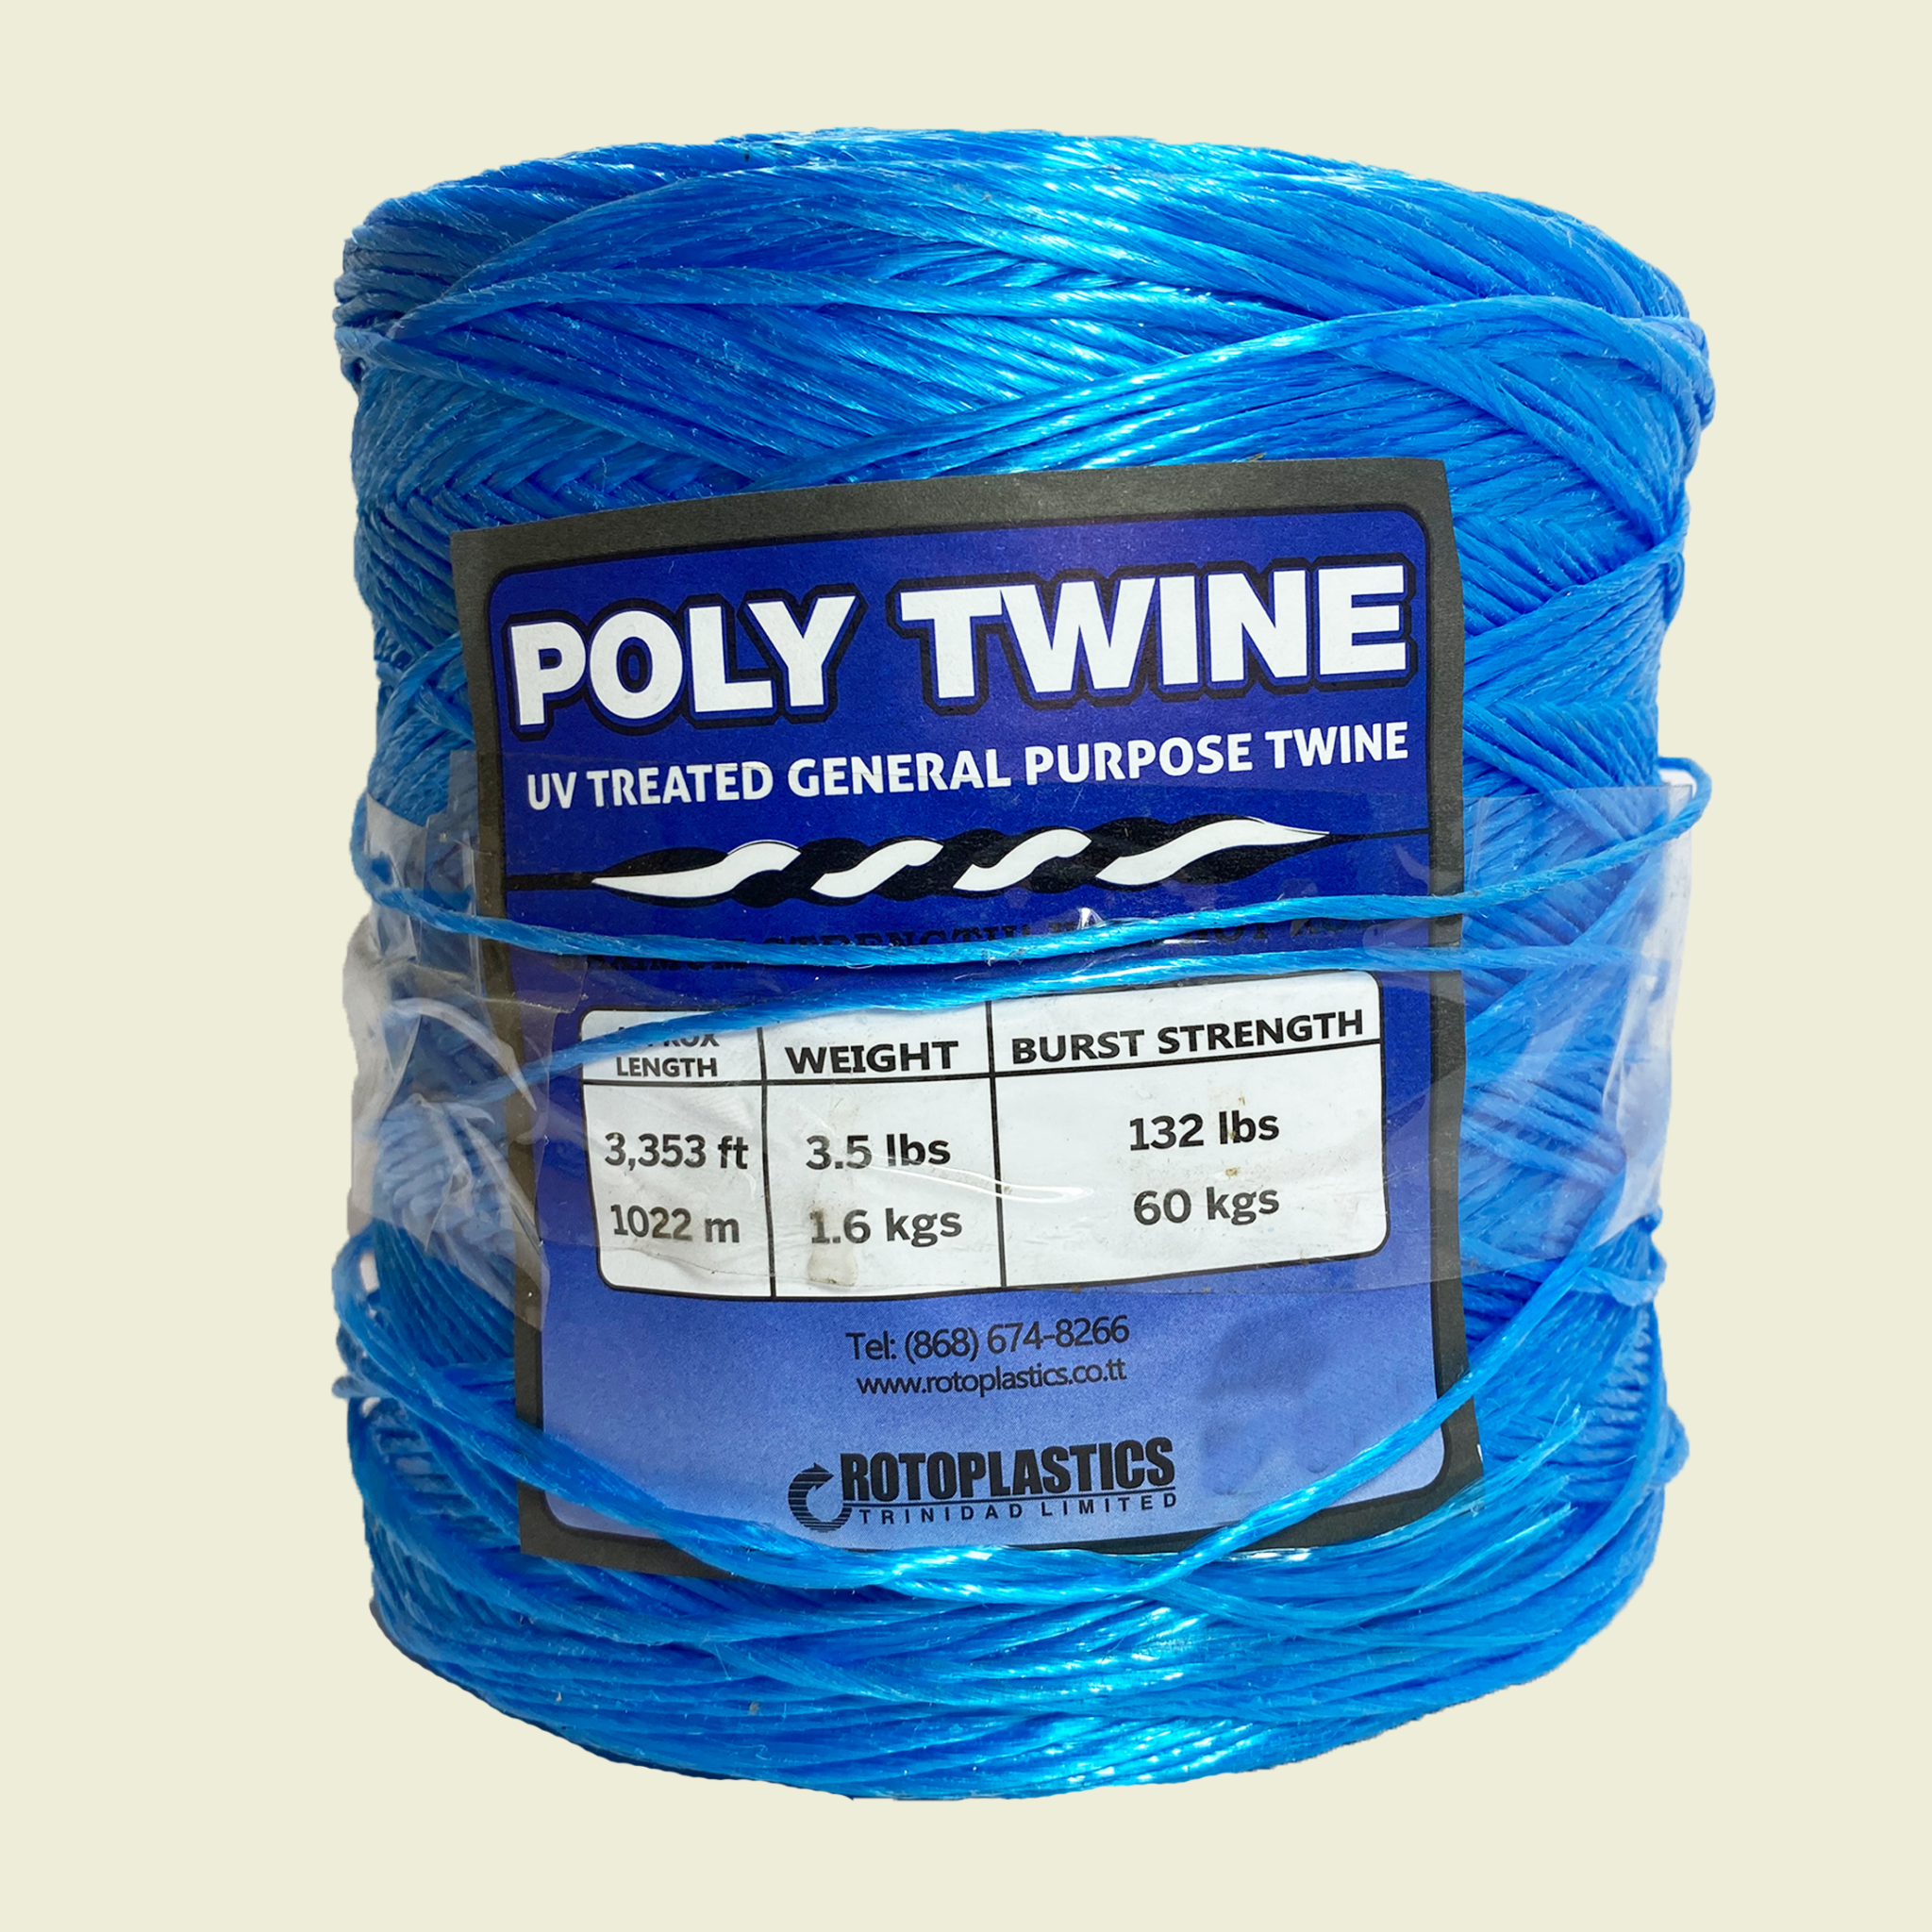 Rotoplastics Poly Twine 3353ft • Samaroo's Materials & General LTD